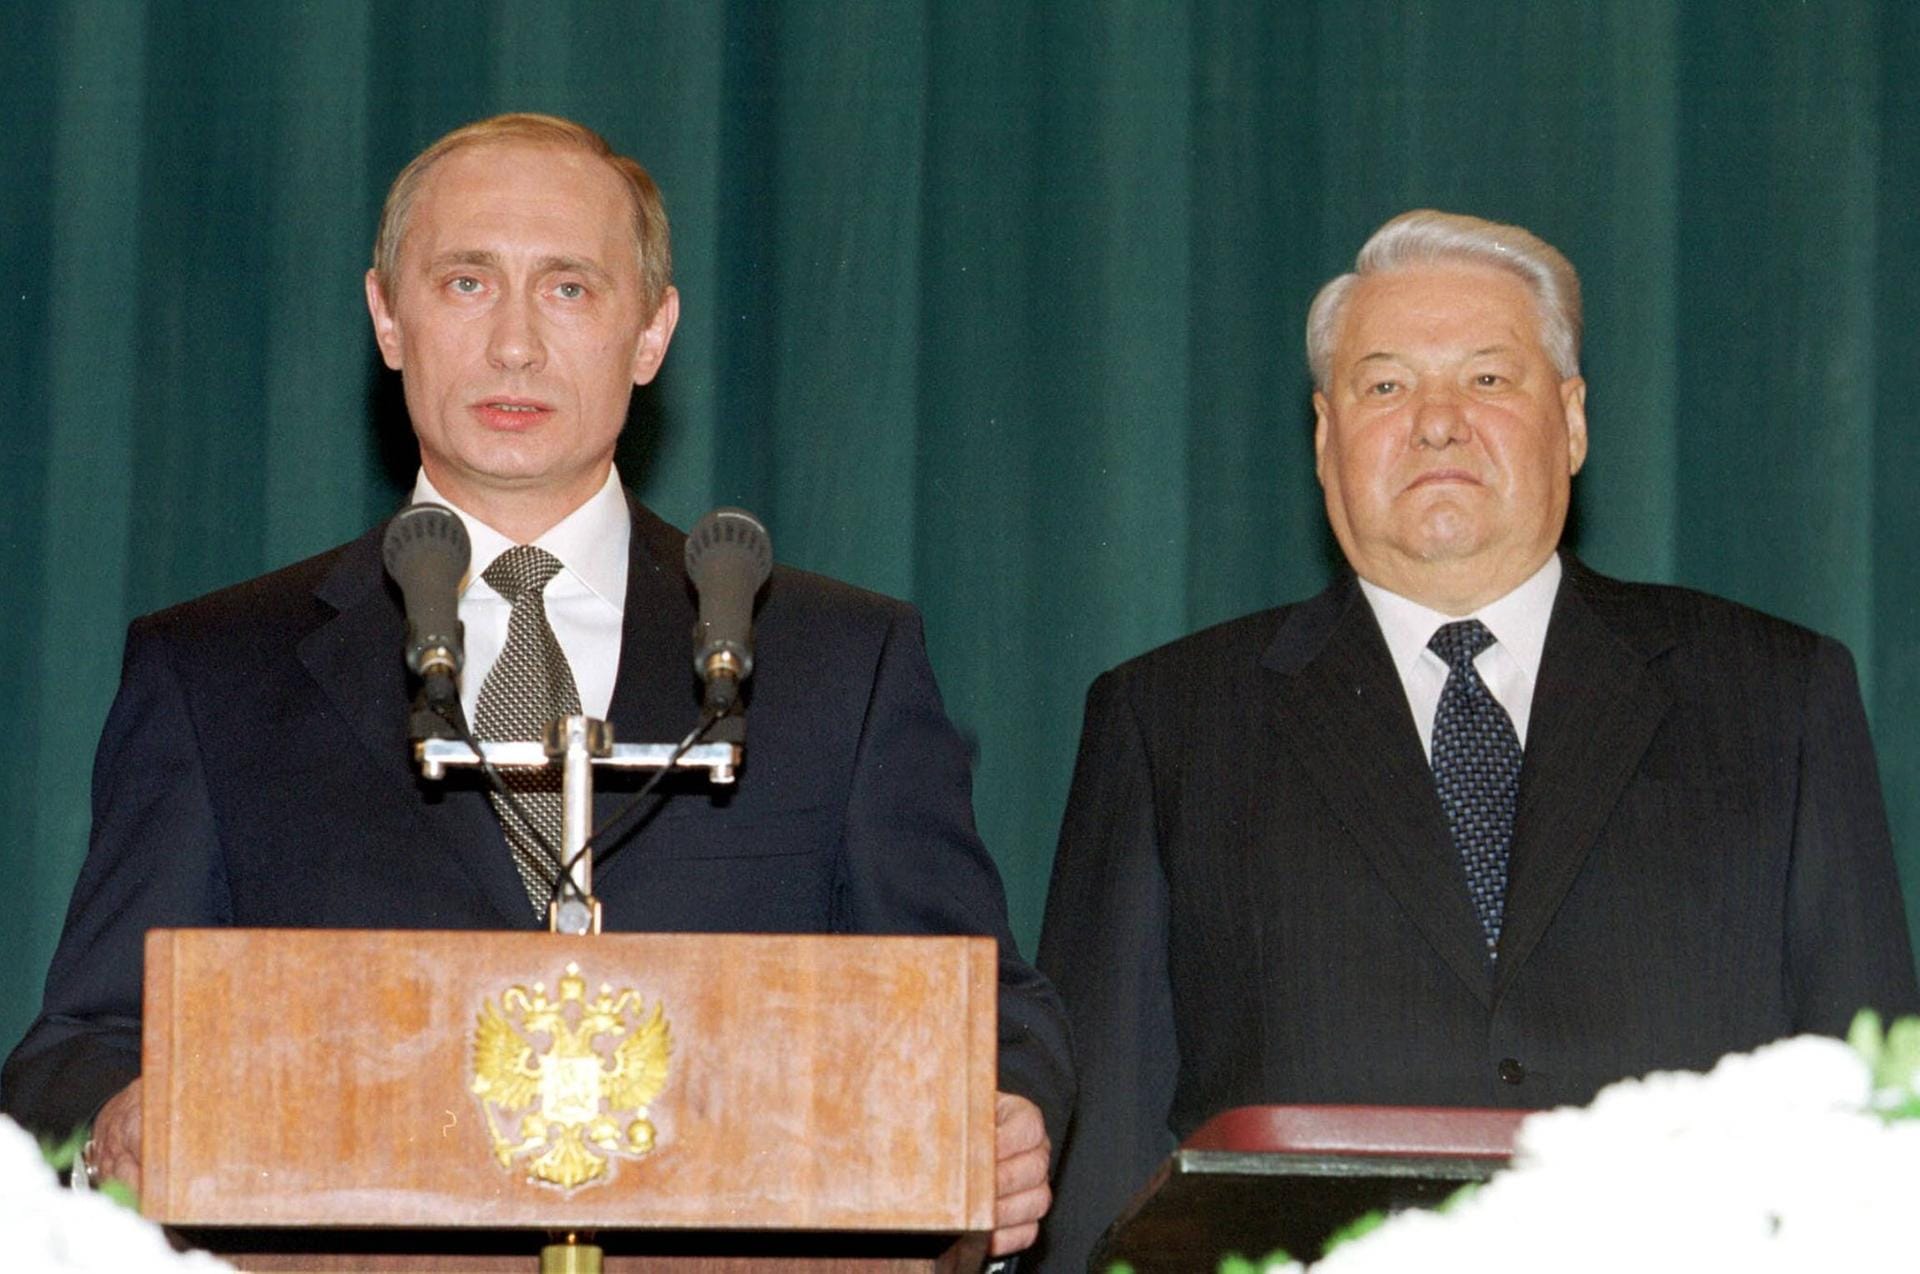 Mit dem Jahrtausendwechsel setzt sich Putin an die Spitze: Am 31. Dezember 1999 verkündet der gesundheitlich angeschlagene Jelzin seinen Rücktritt und übergibt die Amtsgeschäfte an Putin. Wenige Monate später gewinnt er die Präsidentschaftswahl mit 52 Prozent.